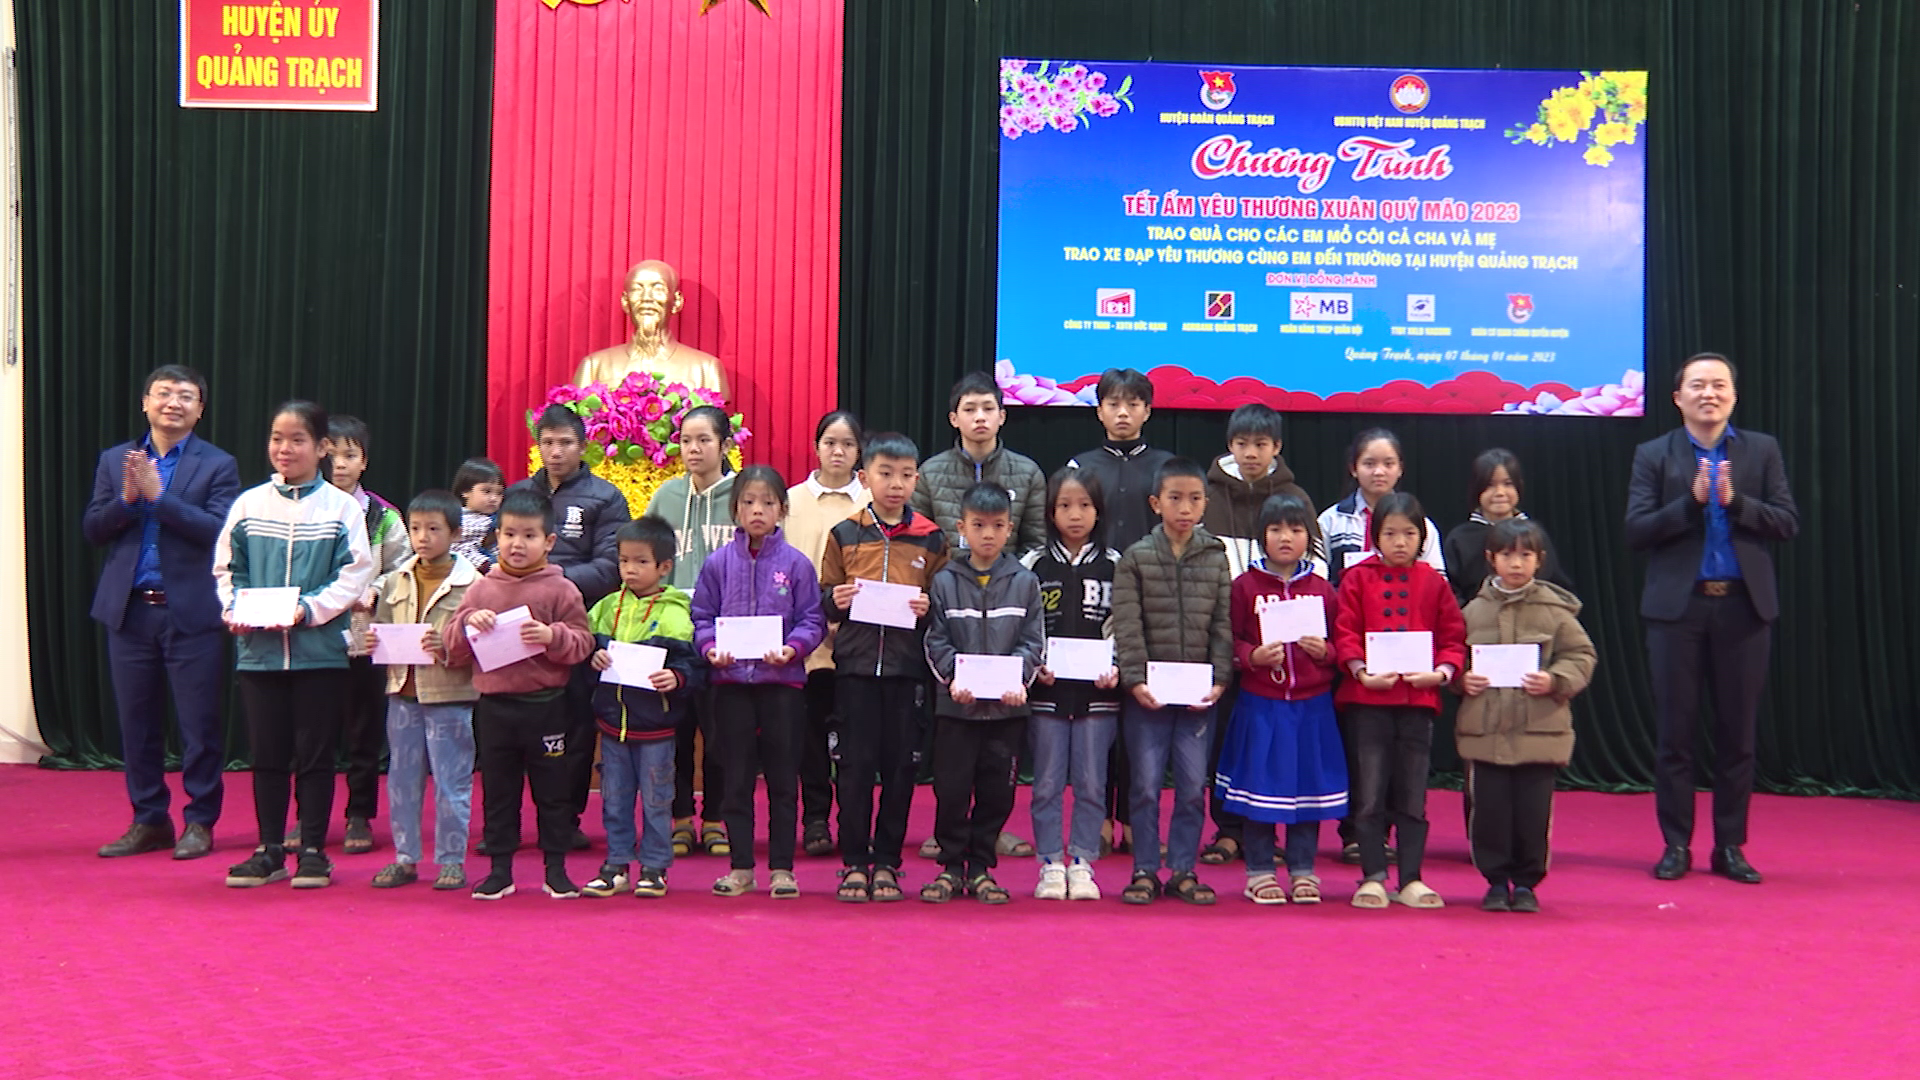 Huyện đoàn Quảng Trạch tổ chức chương trình Tết ấm yêu thương xuân Quý Mão năm 2023, trao quà cho các em mồ côi cả cha và mẹ trên địa bàn.